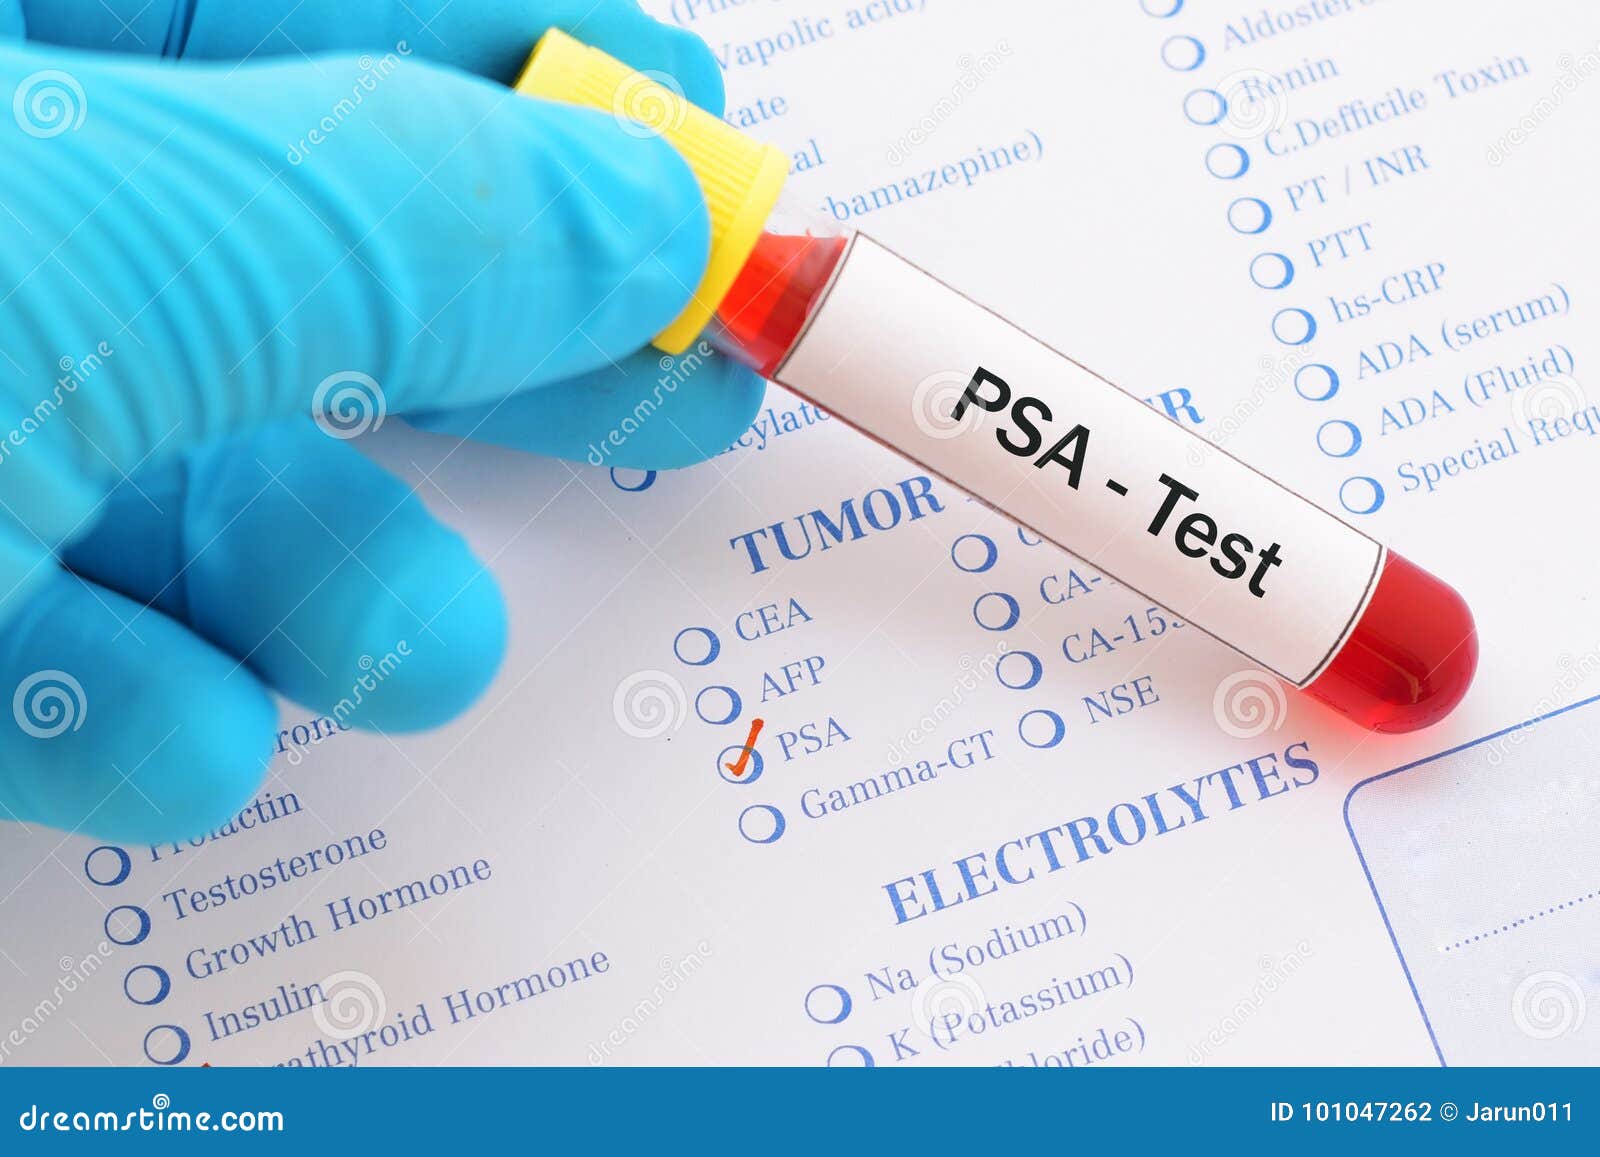 PSA test stock photo. Image of analyzing, serology, laboratory - 101047262